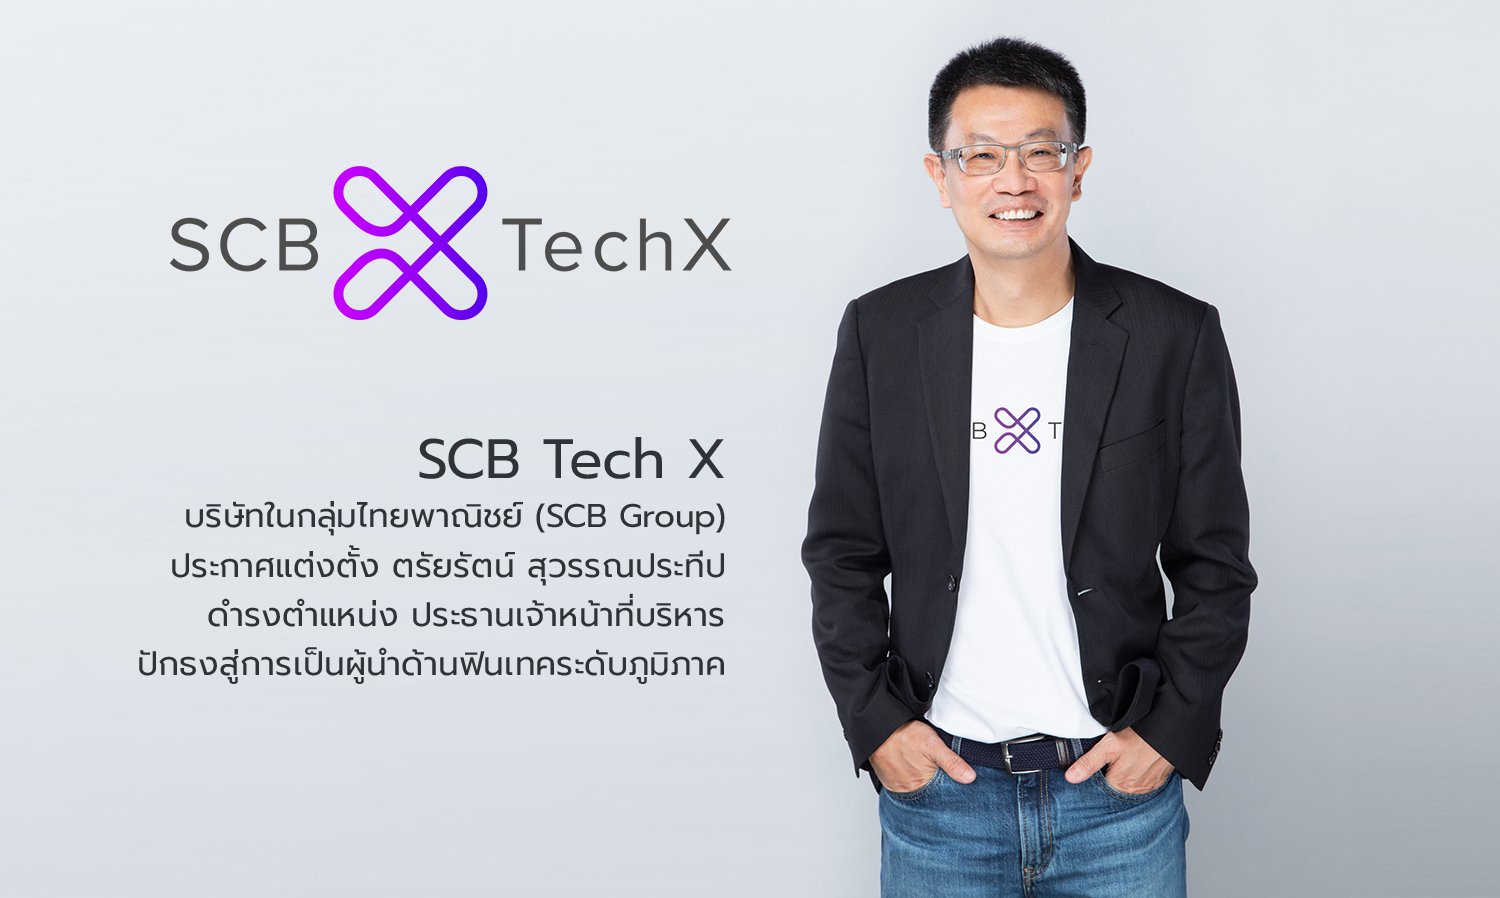 SCB Tech X บริษัทในกลุ่มไทยพาณิชย์ (SCB Group) ประกาศแต่งตั้ง ตรัยรัตน์ สุวรรณประทีป ดำรงตำแหน่ง ประธานเจ้าหน้าที่บริหาร ปักธงสู่การเป็นผู้นำด้านฟินเทคระดับภูมิภาค